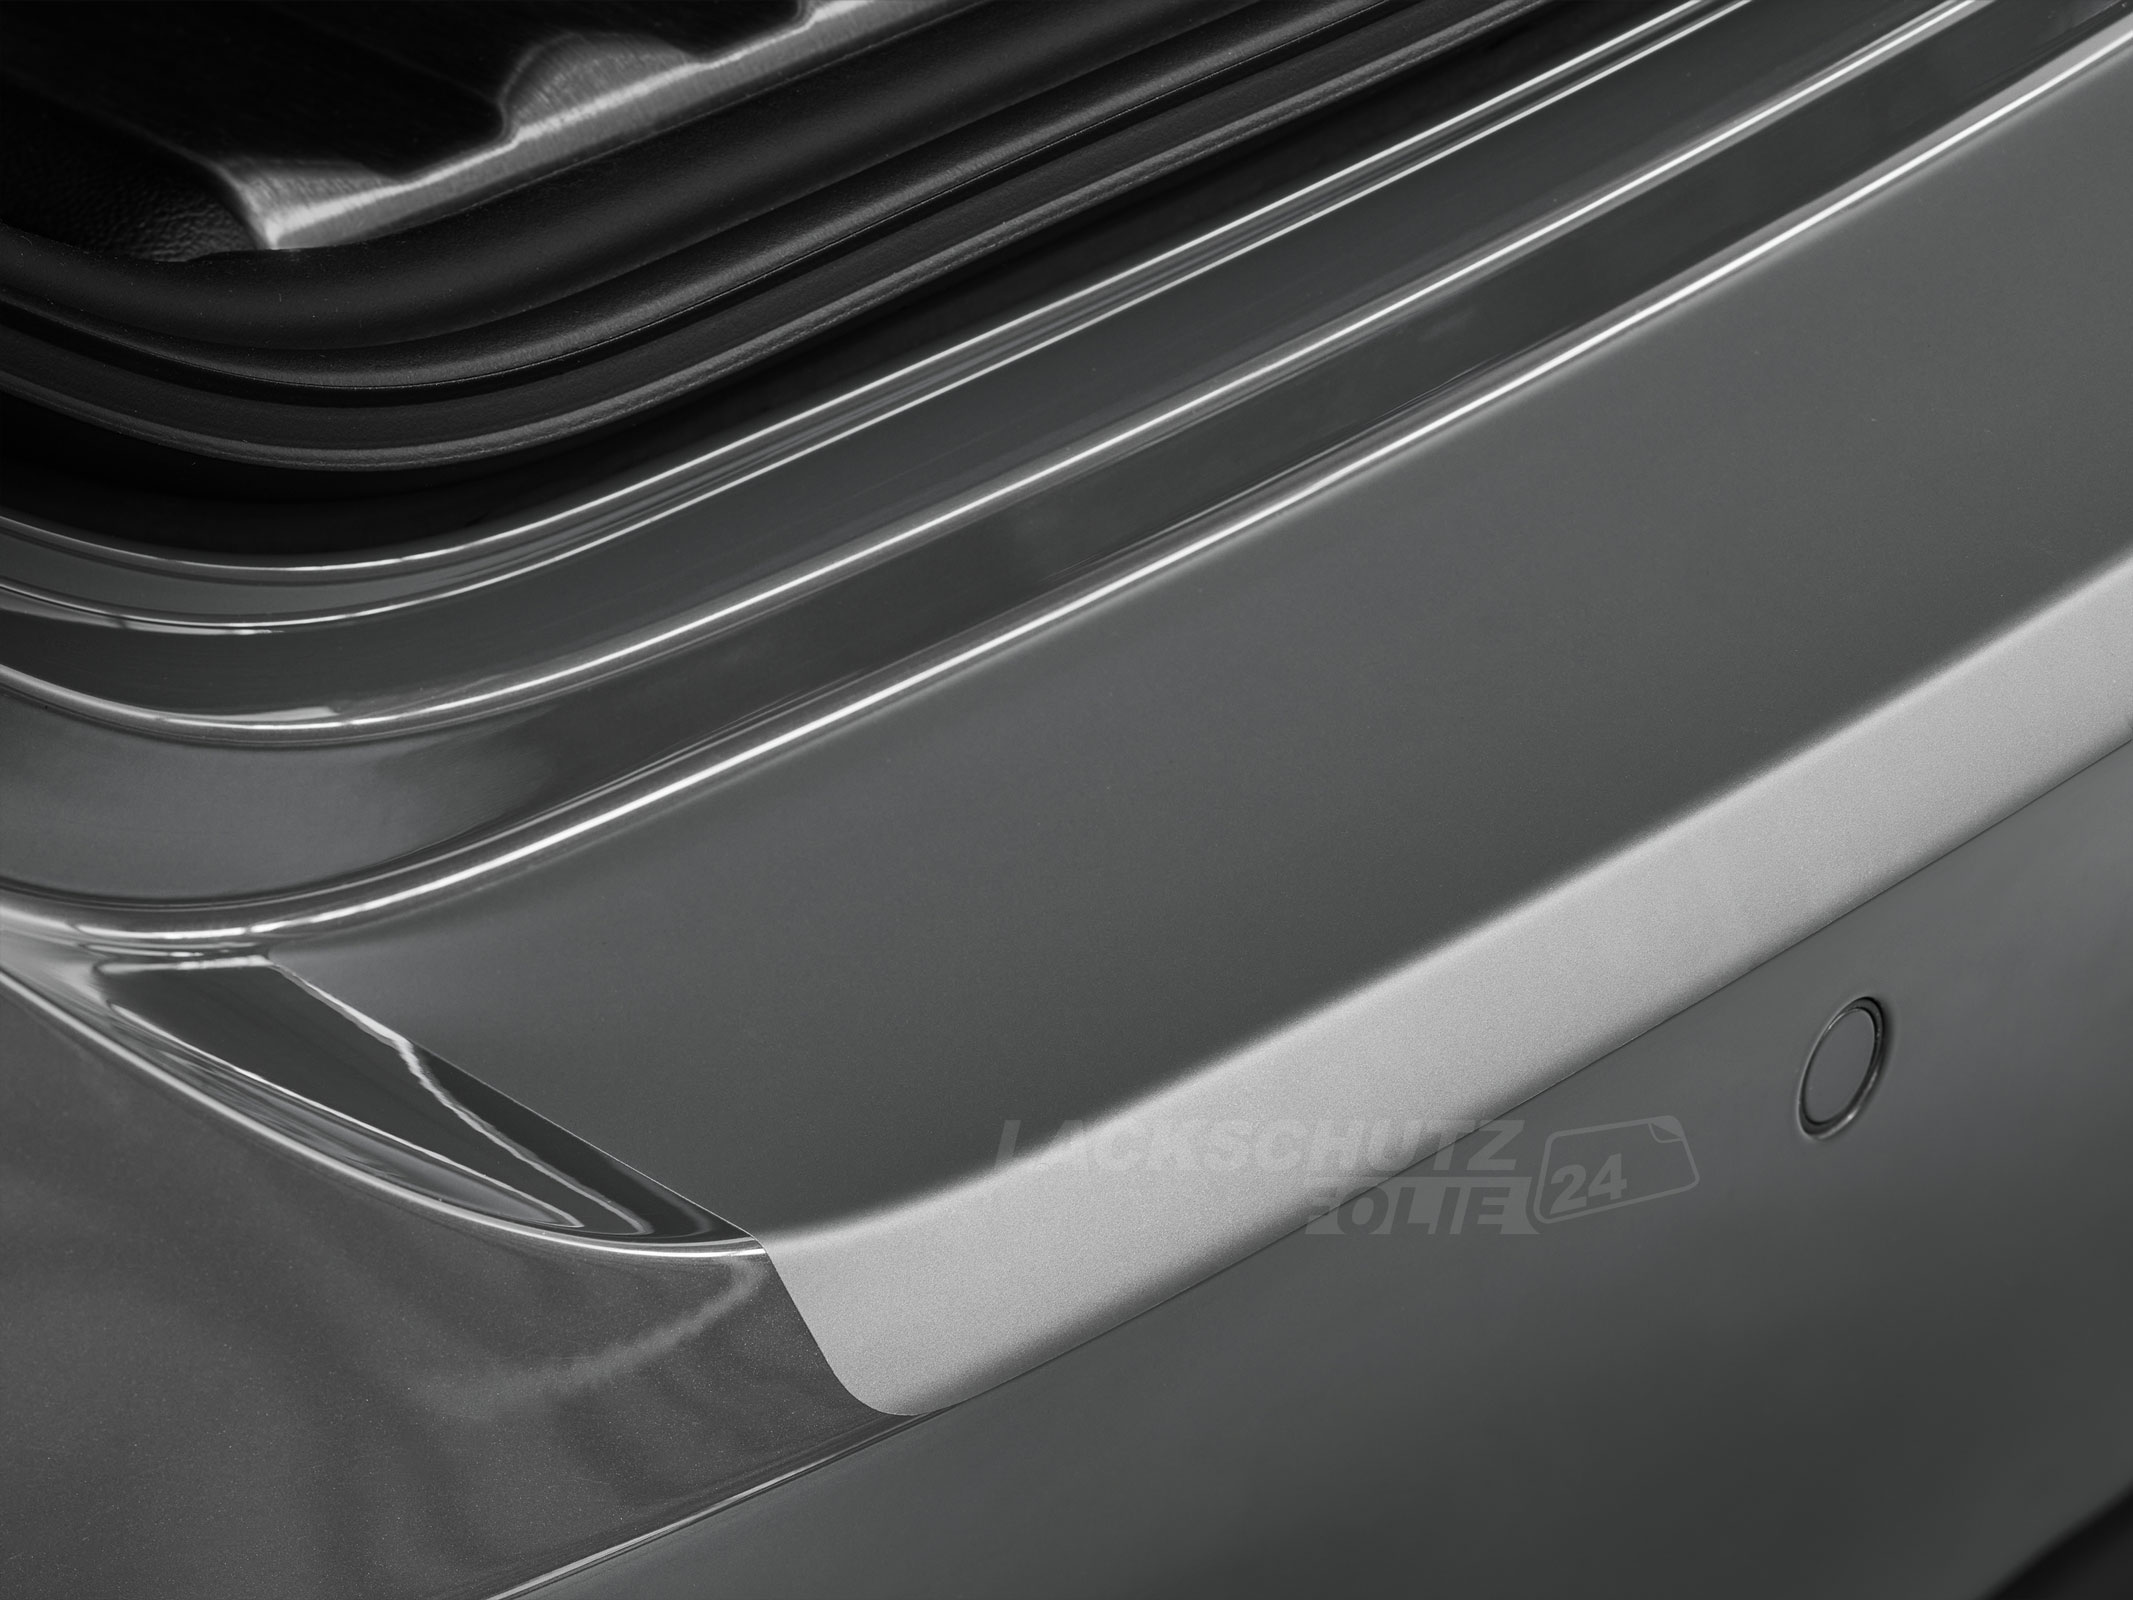 Ladekantenschutzfolie - Transparent Glatt MATT für Volvo S60 BJ 2013-11/2018